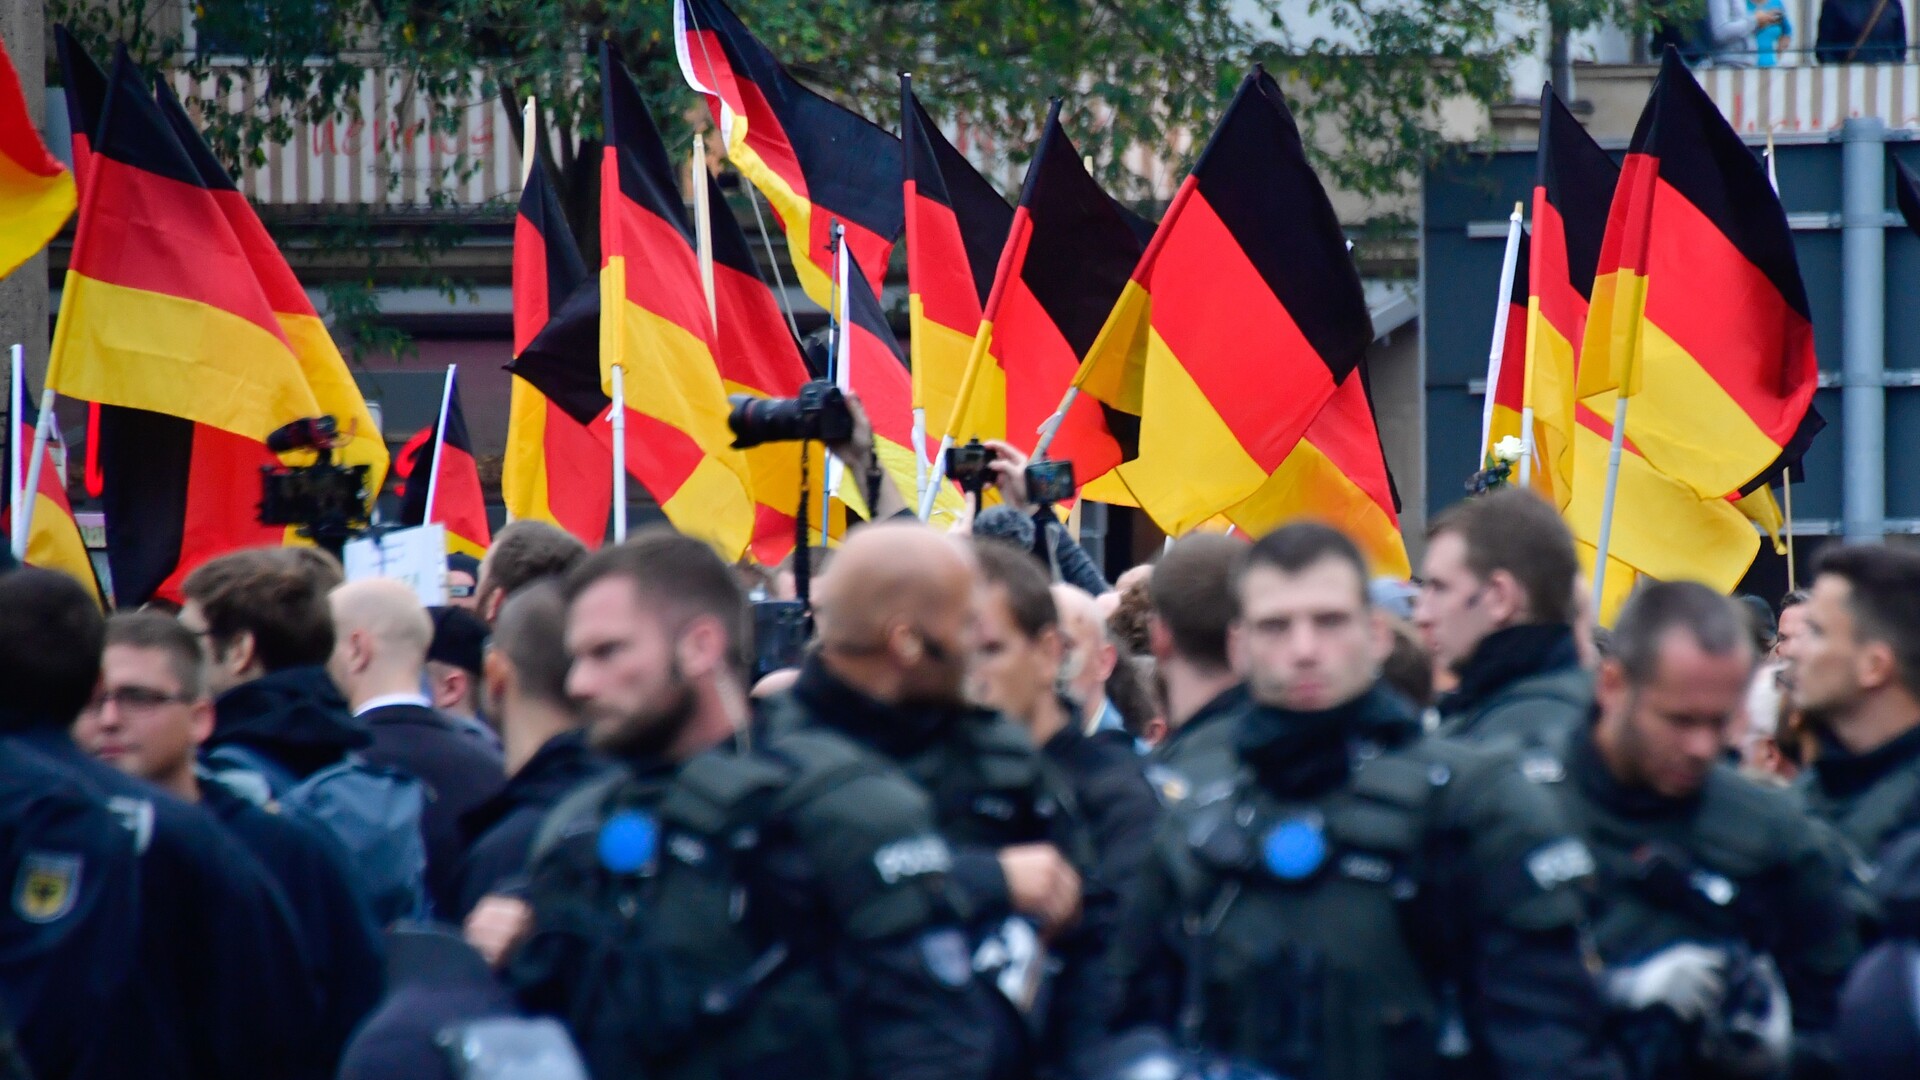 Emil Hee Stenstrup: Er højreekstremismen i det tyske politi udtryk for enkelttilfælde eller et strukturelt problem?